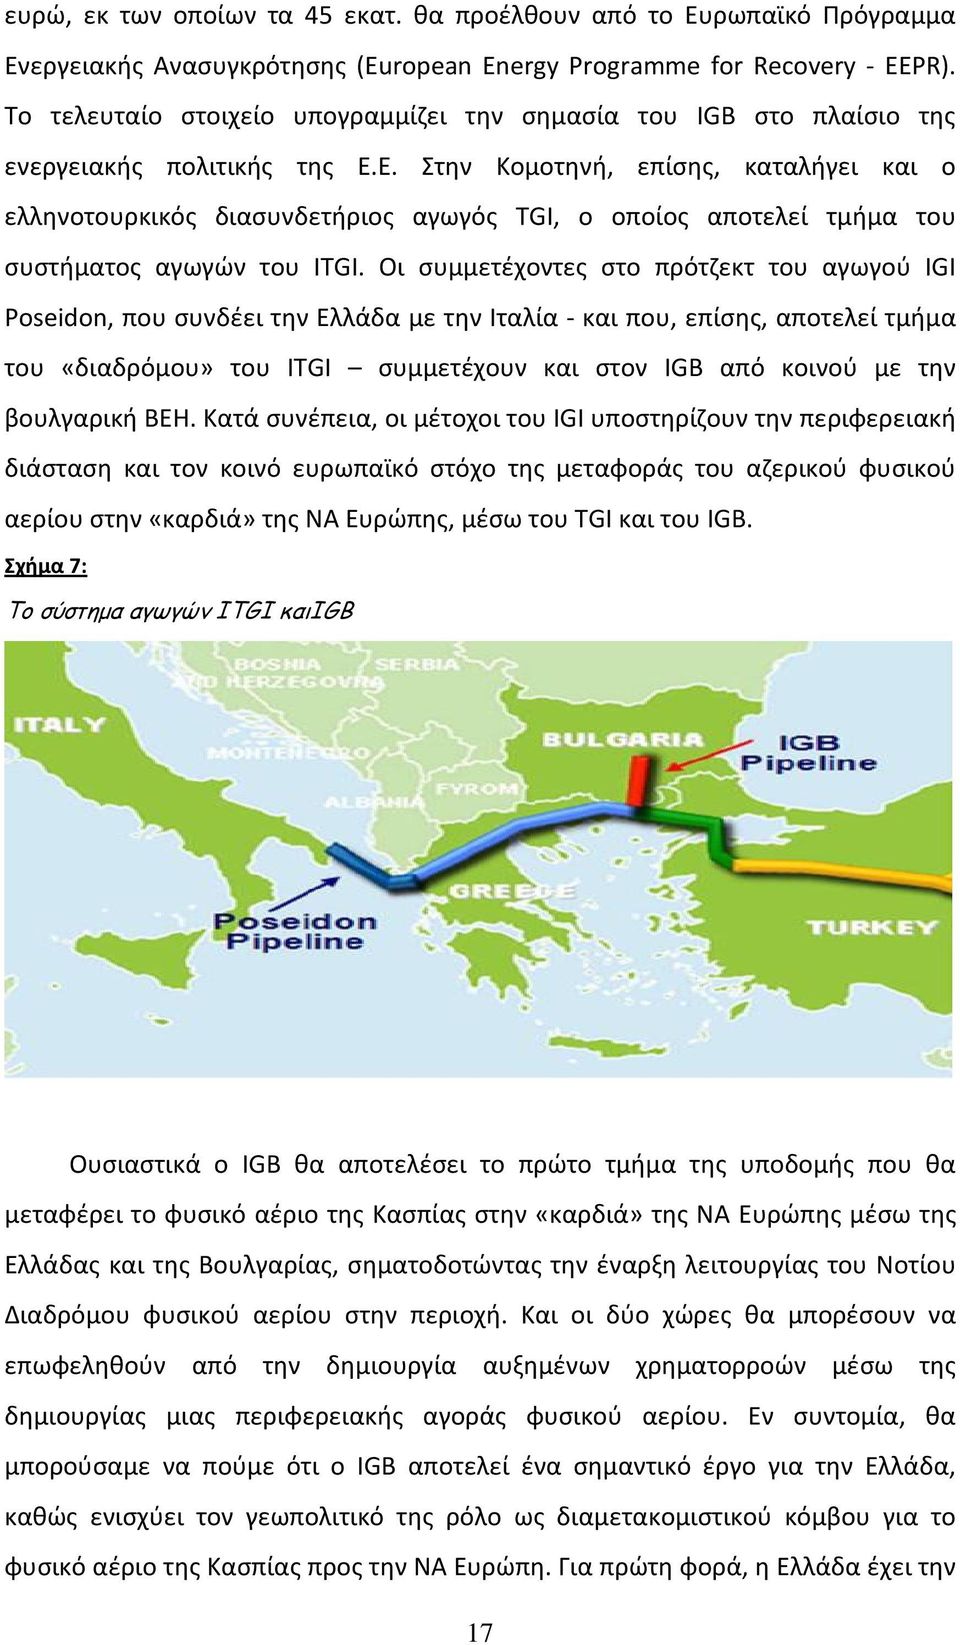 Ε. Στην Κομοτηνή, επίσης, καταλήγει και ο ελληνοτουρκικός διασυνδετήριος αγωγός TGI, ο οποίος αποτελεί τμήμα του συστήματος αγωγών του ITGI.